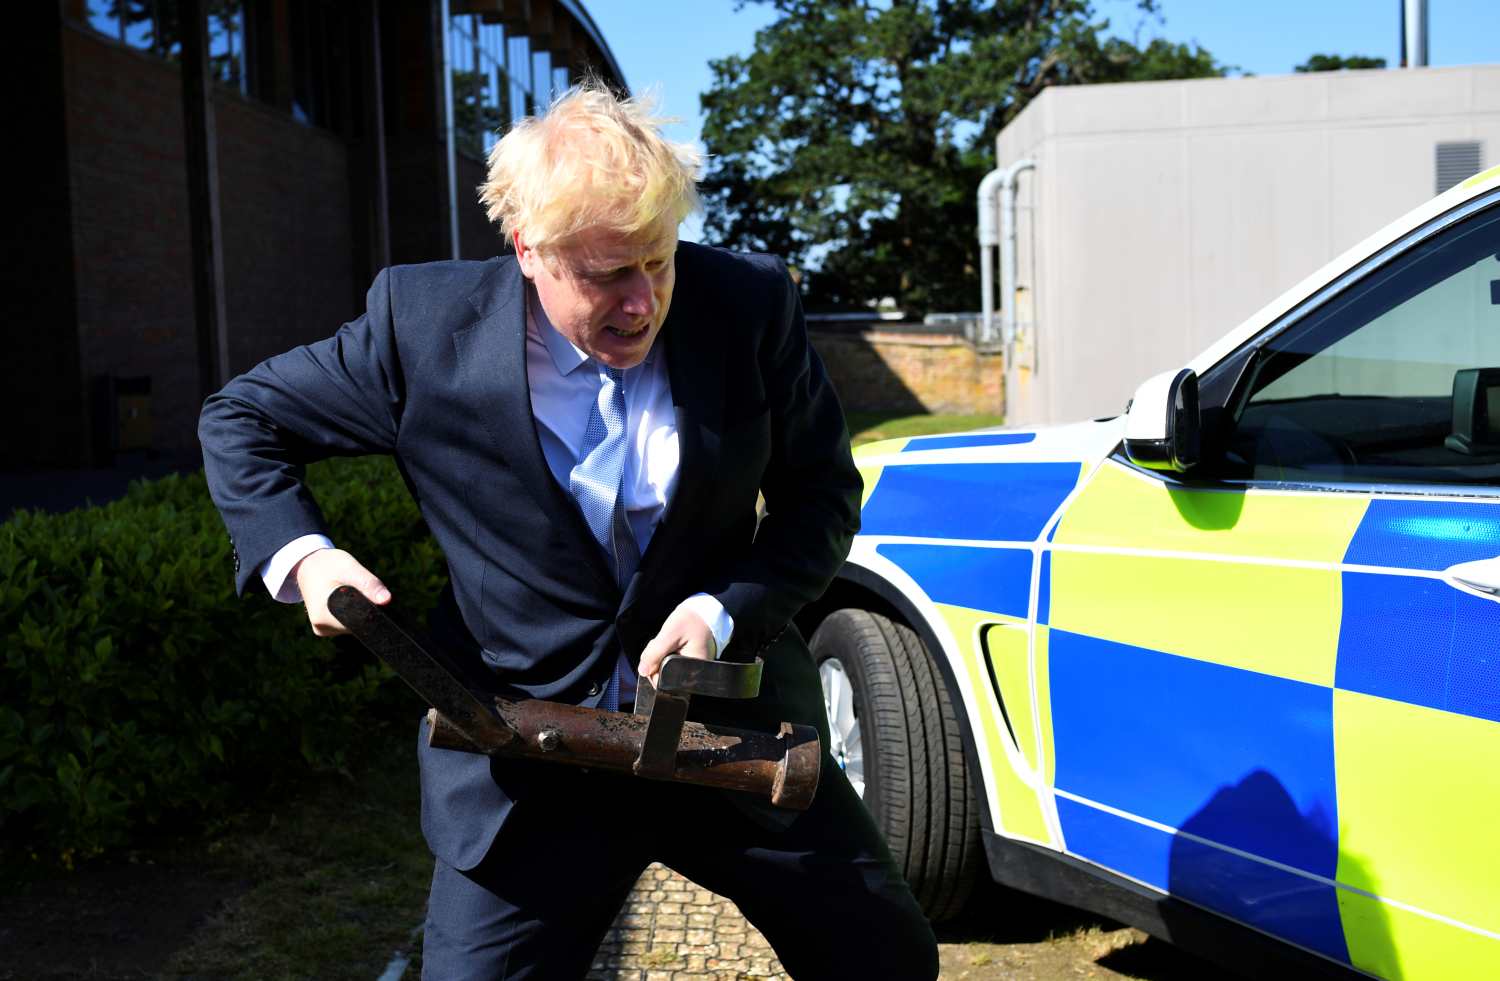 Boris Johnson, candidato al liderazgo del Partido Conservador de Gran Bretaña, bromea con un ariete cuando visita el Centro de Capacitación de la Policía de Thames Valley.